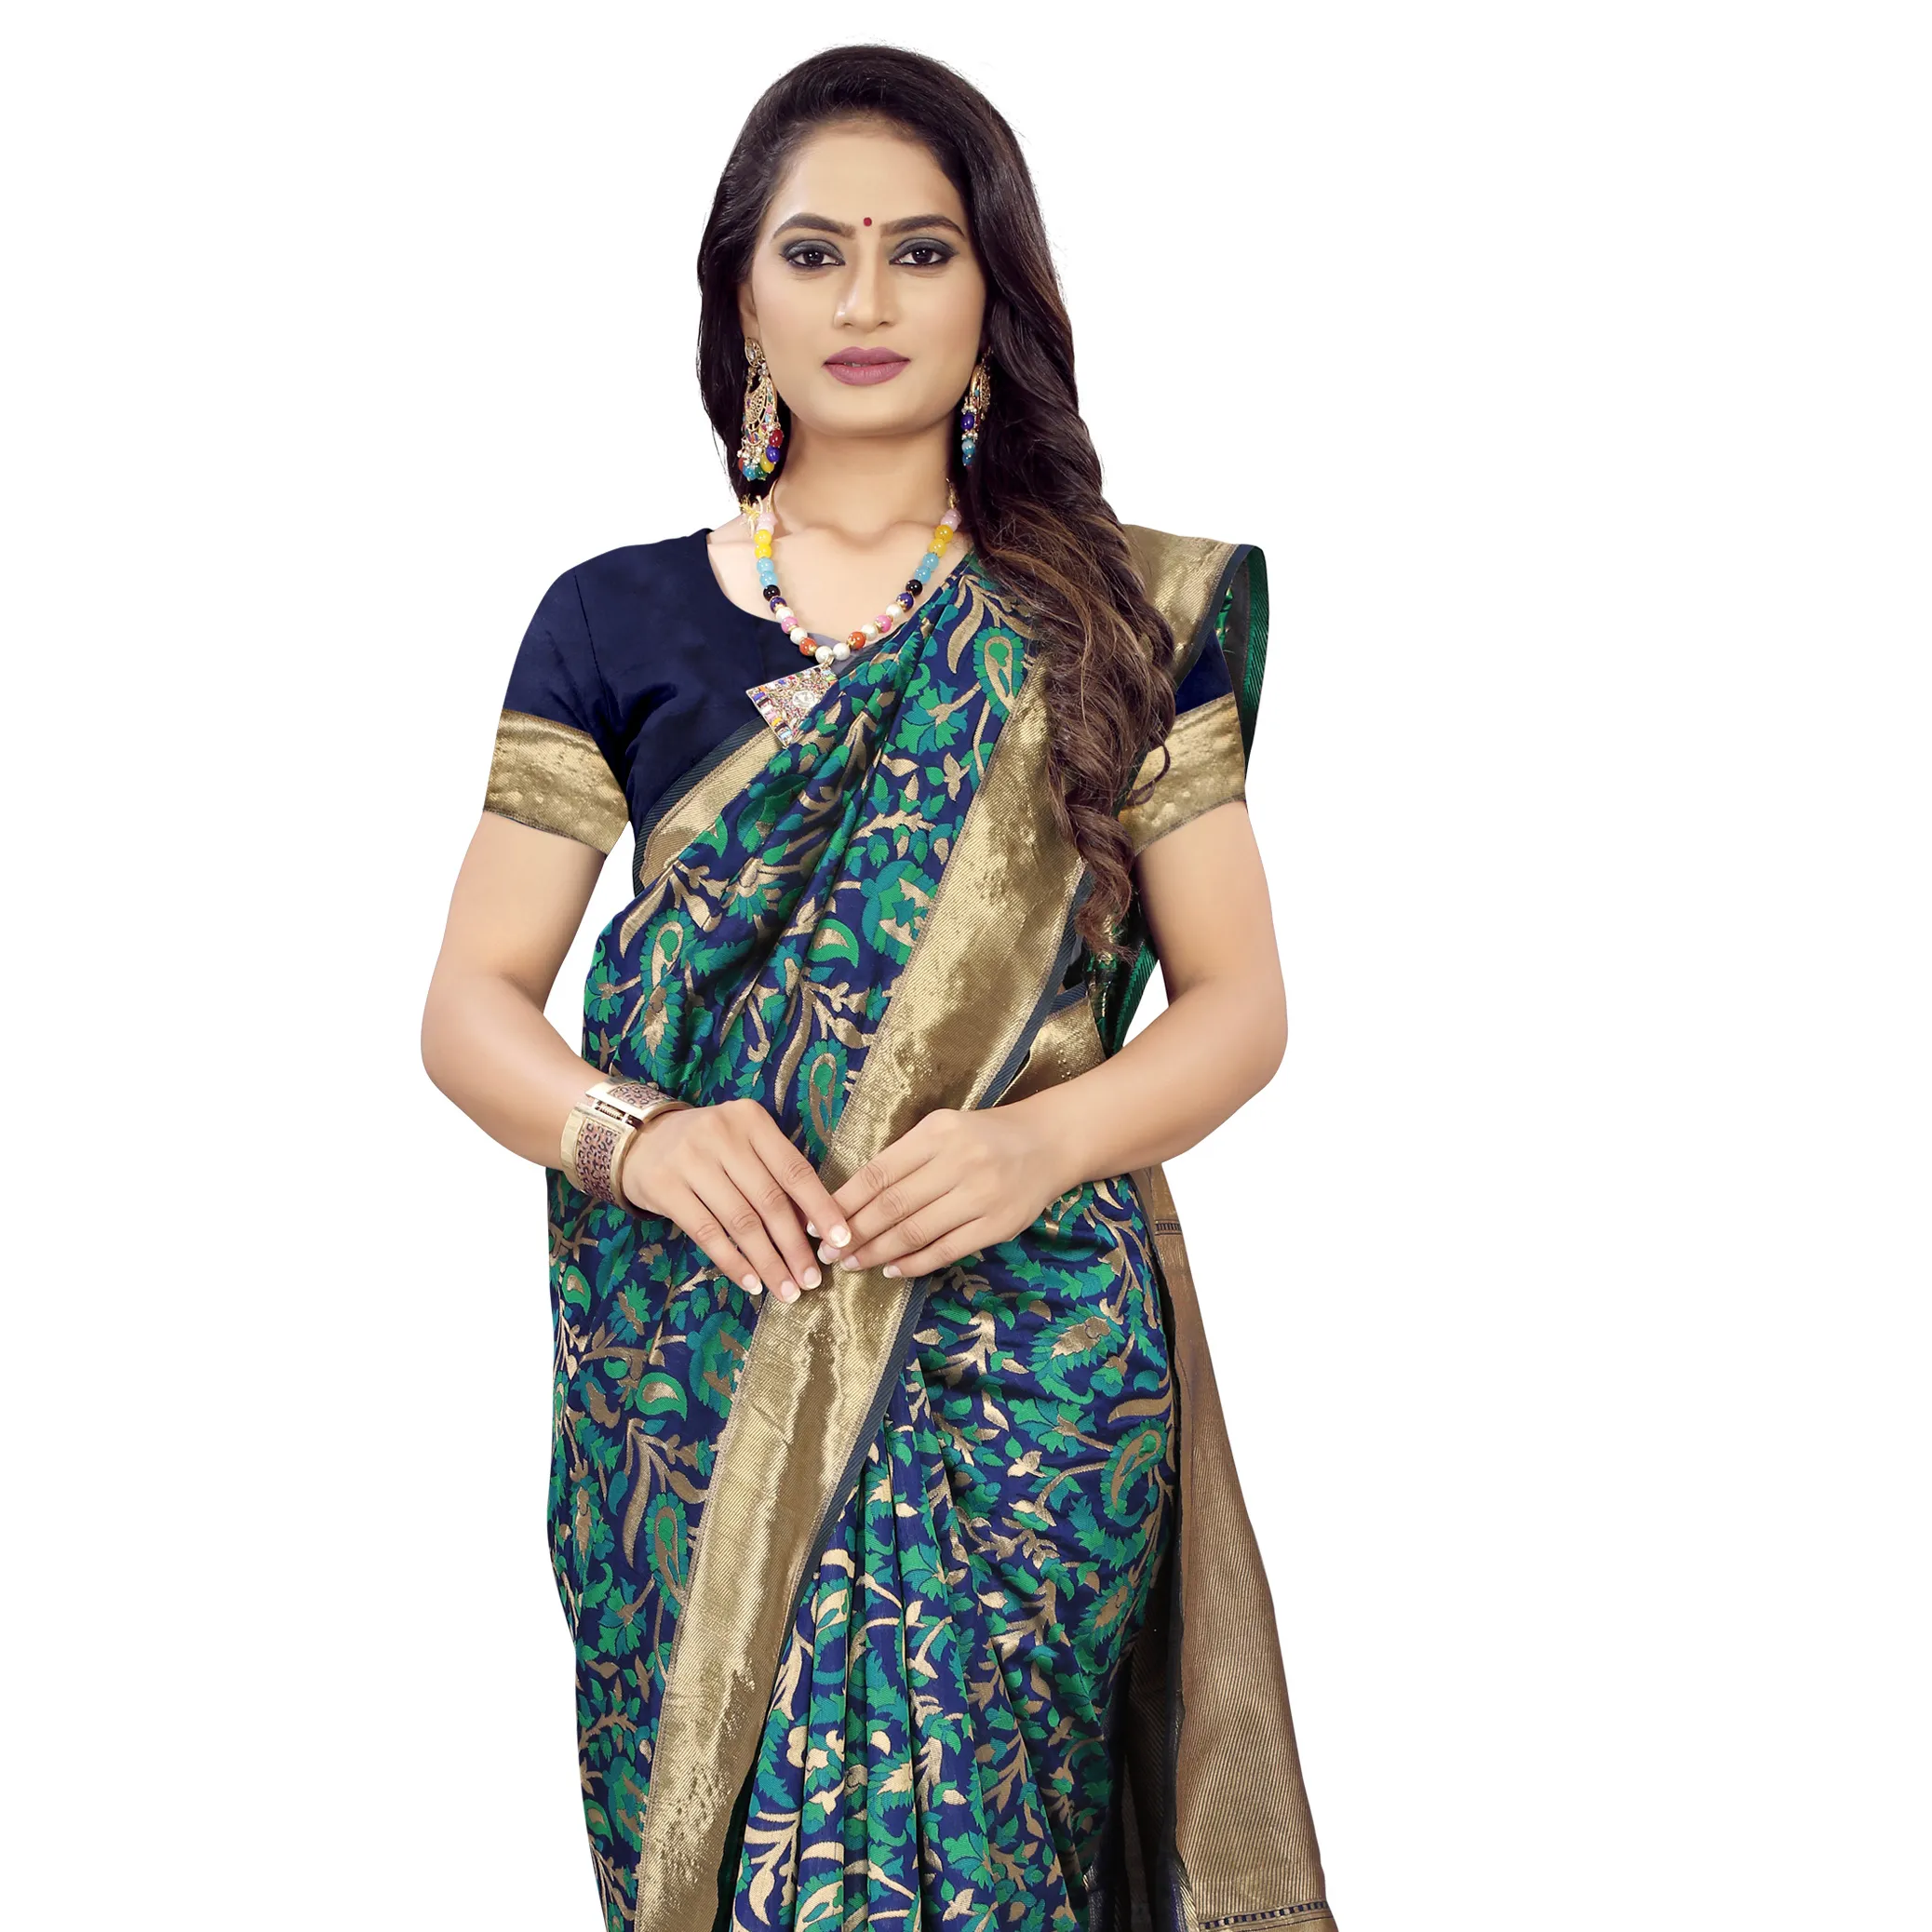 लोकप्रिय रेशम और कपास के साथ अमीर शैली कपड़े बनारसी कला रेशम साड़ी डिजाइनर ब्लाउज भारतीय कपड़ों की